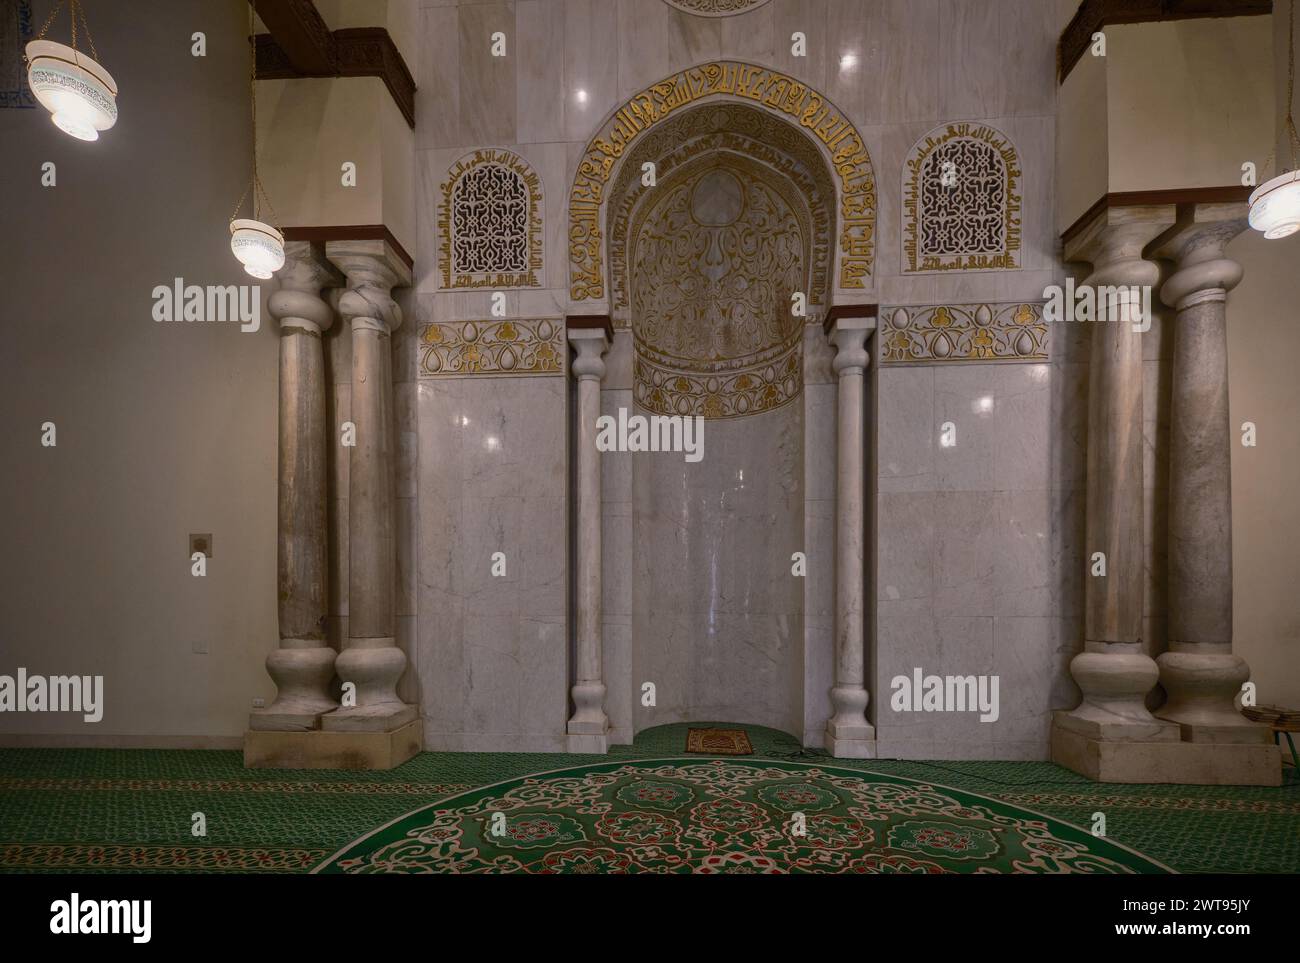 La moschea al-Hakim, al-Anwar, è una moschea storica al Cairo, in Egitto, che prende il nome da al-Hakim bi-Amr Allah, il sesto califfo fatimide e il sedicesimo Imam ismailita. Foto Stock